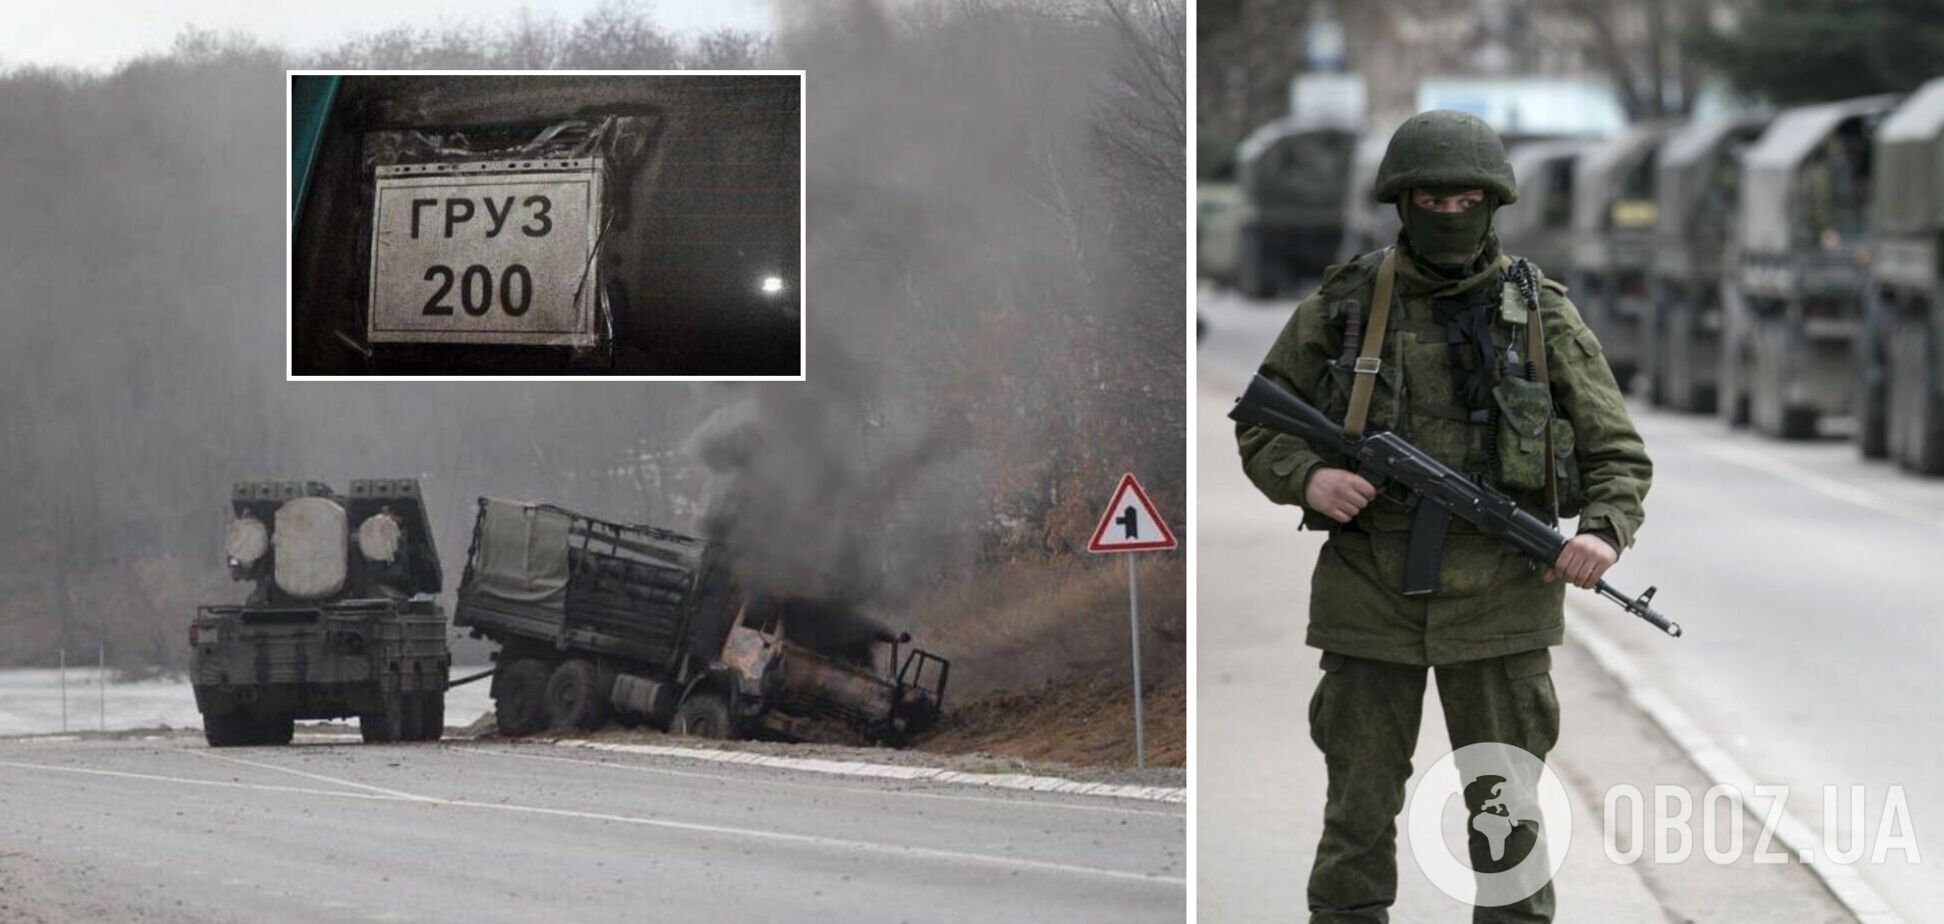 'Я своих боюсь больше, чем банд****цев': оккупант рассказал о потерях РФ в Украине. Аудио